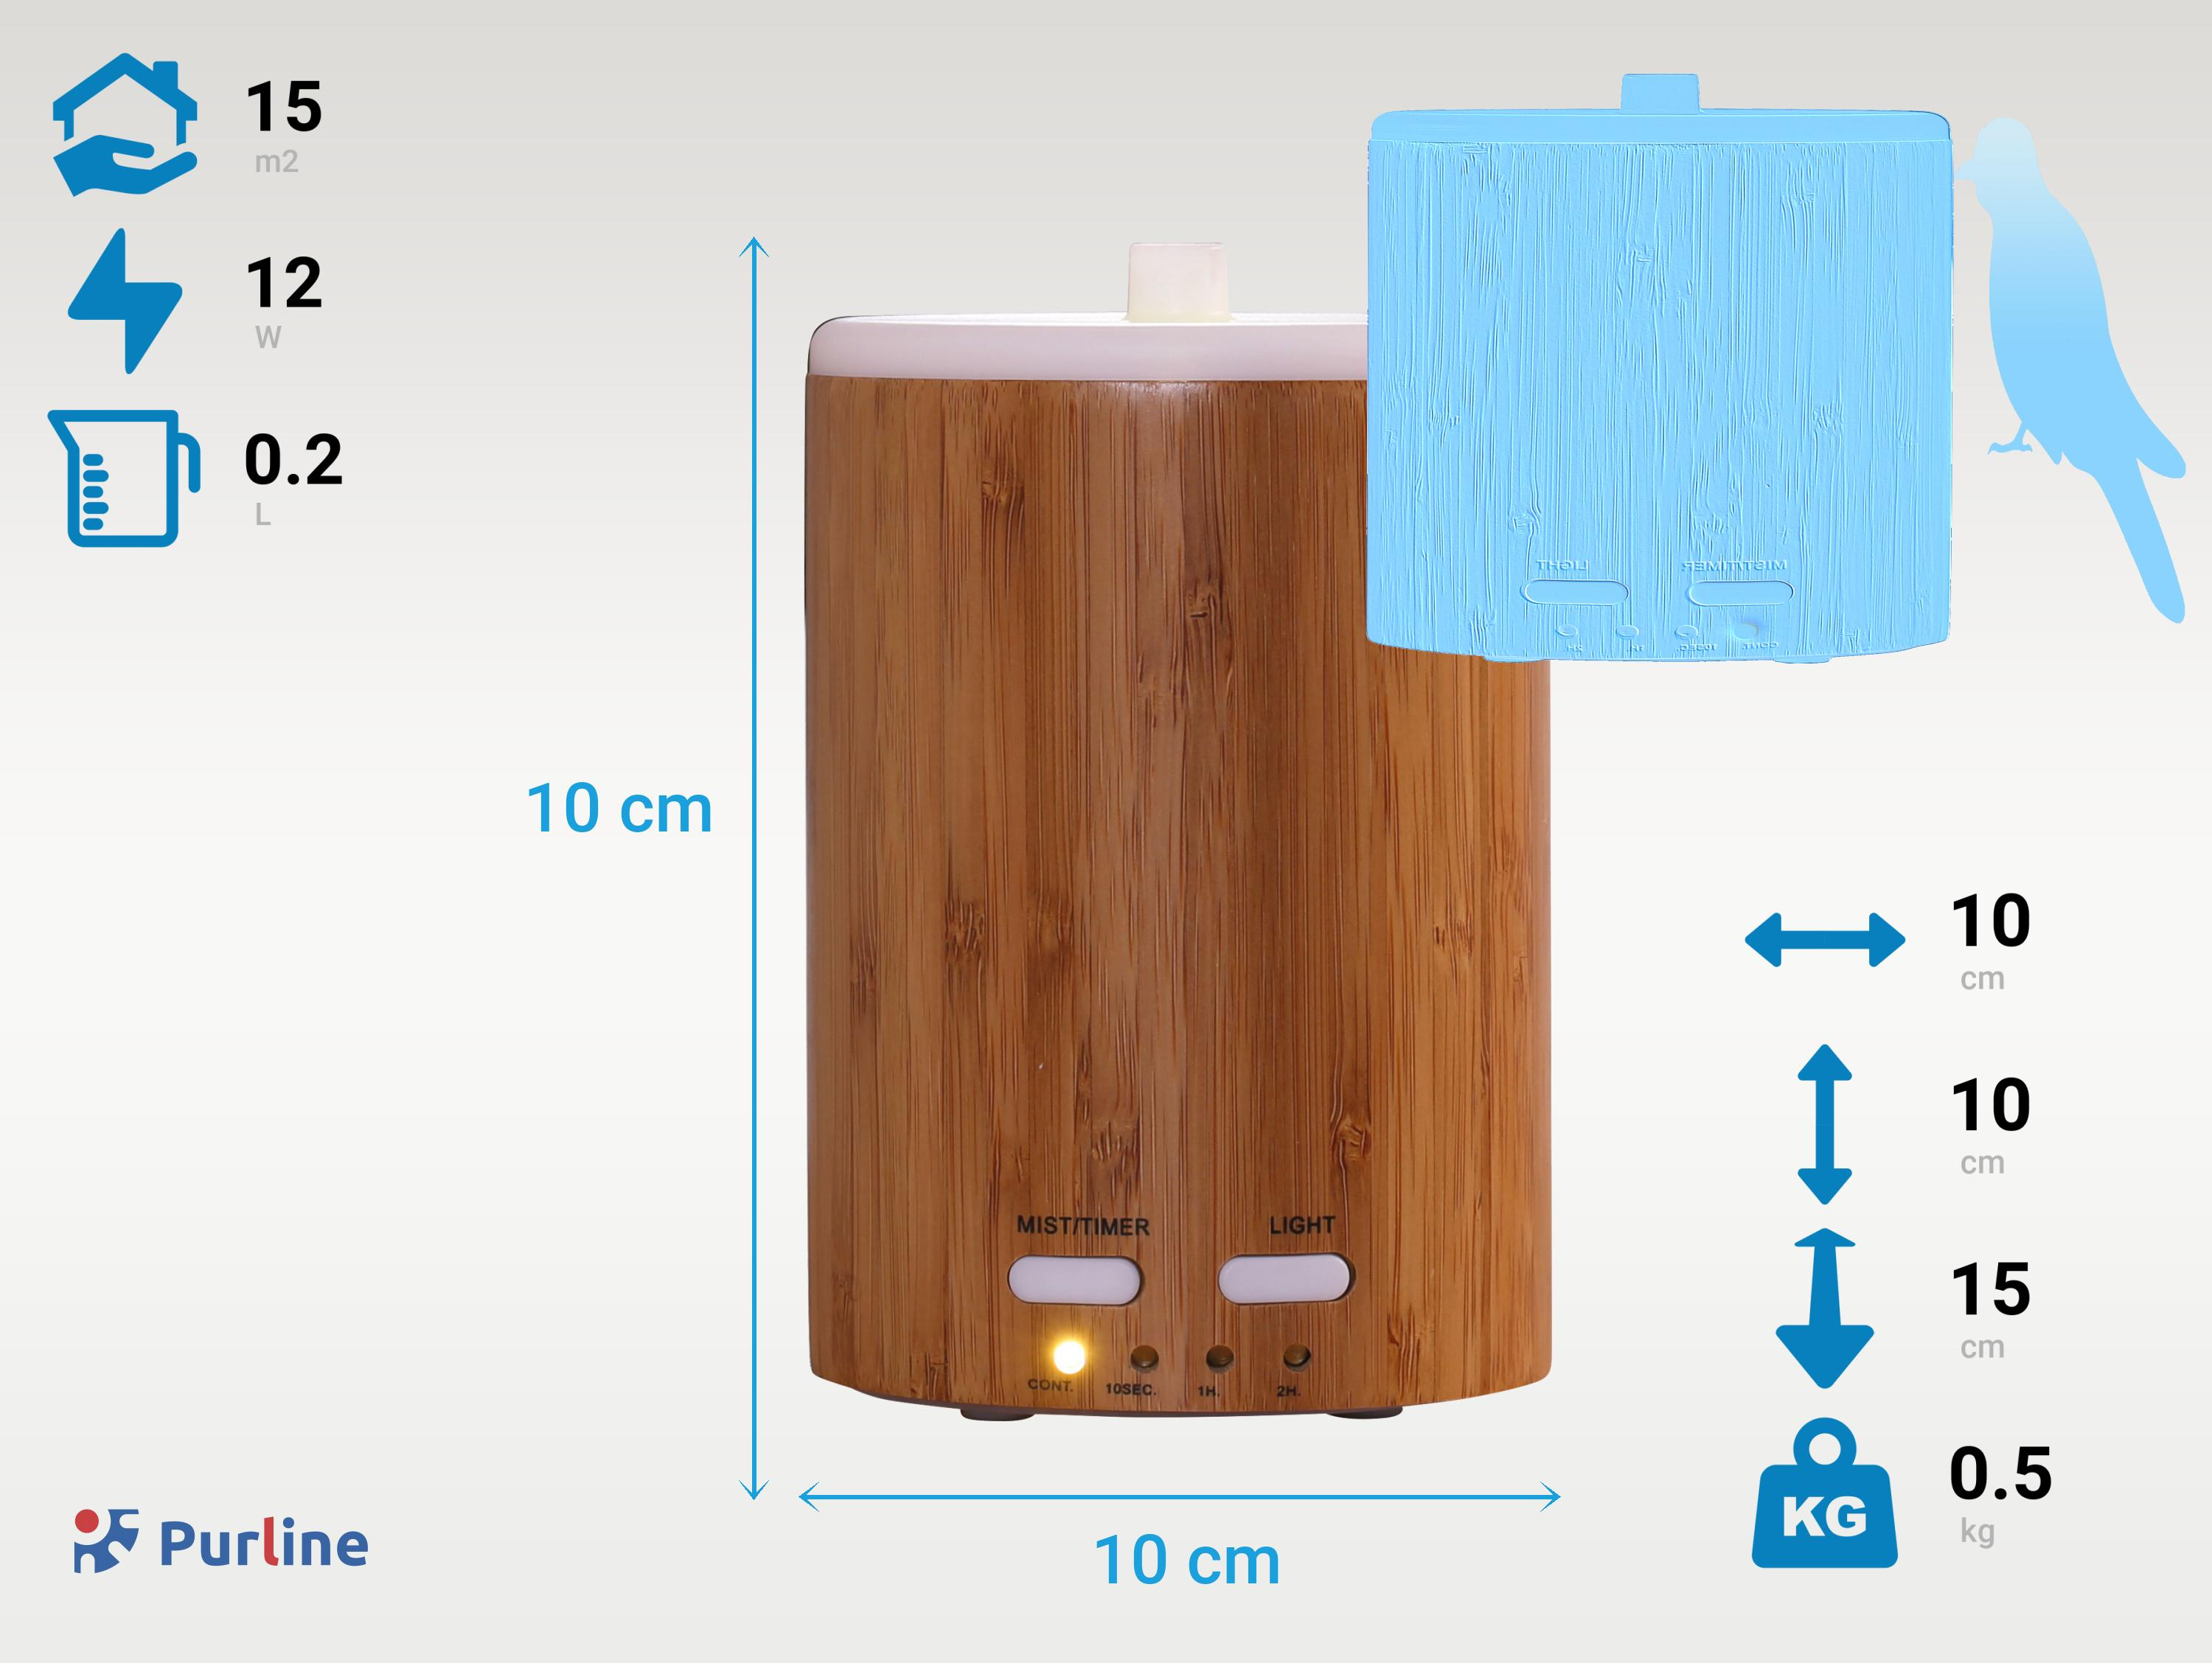 12W PURLINE mit Raumgröße: Bambus-Ultraschall-Aroma-Diffusor Aroma Watt, 15 Diffuser Braun m²) LED-Lichtwähler (12